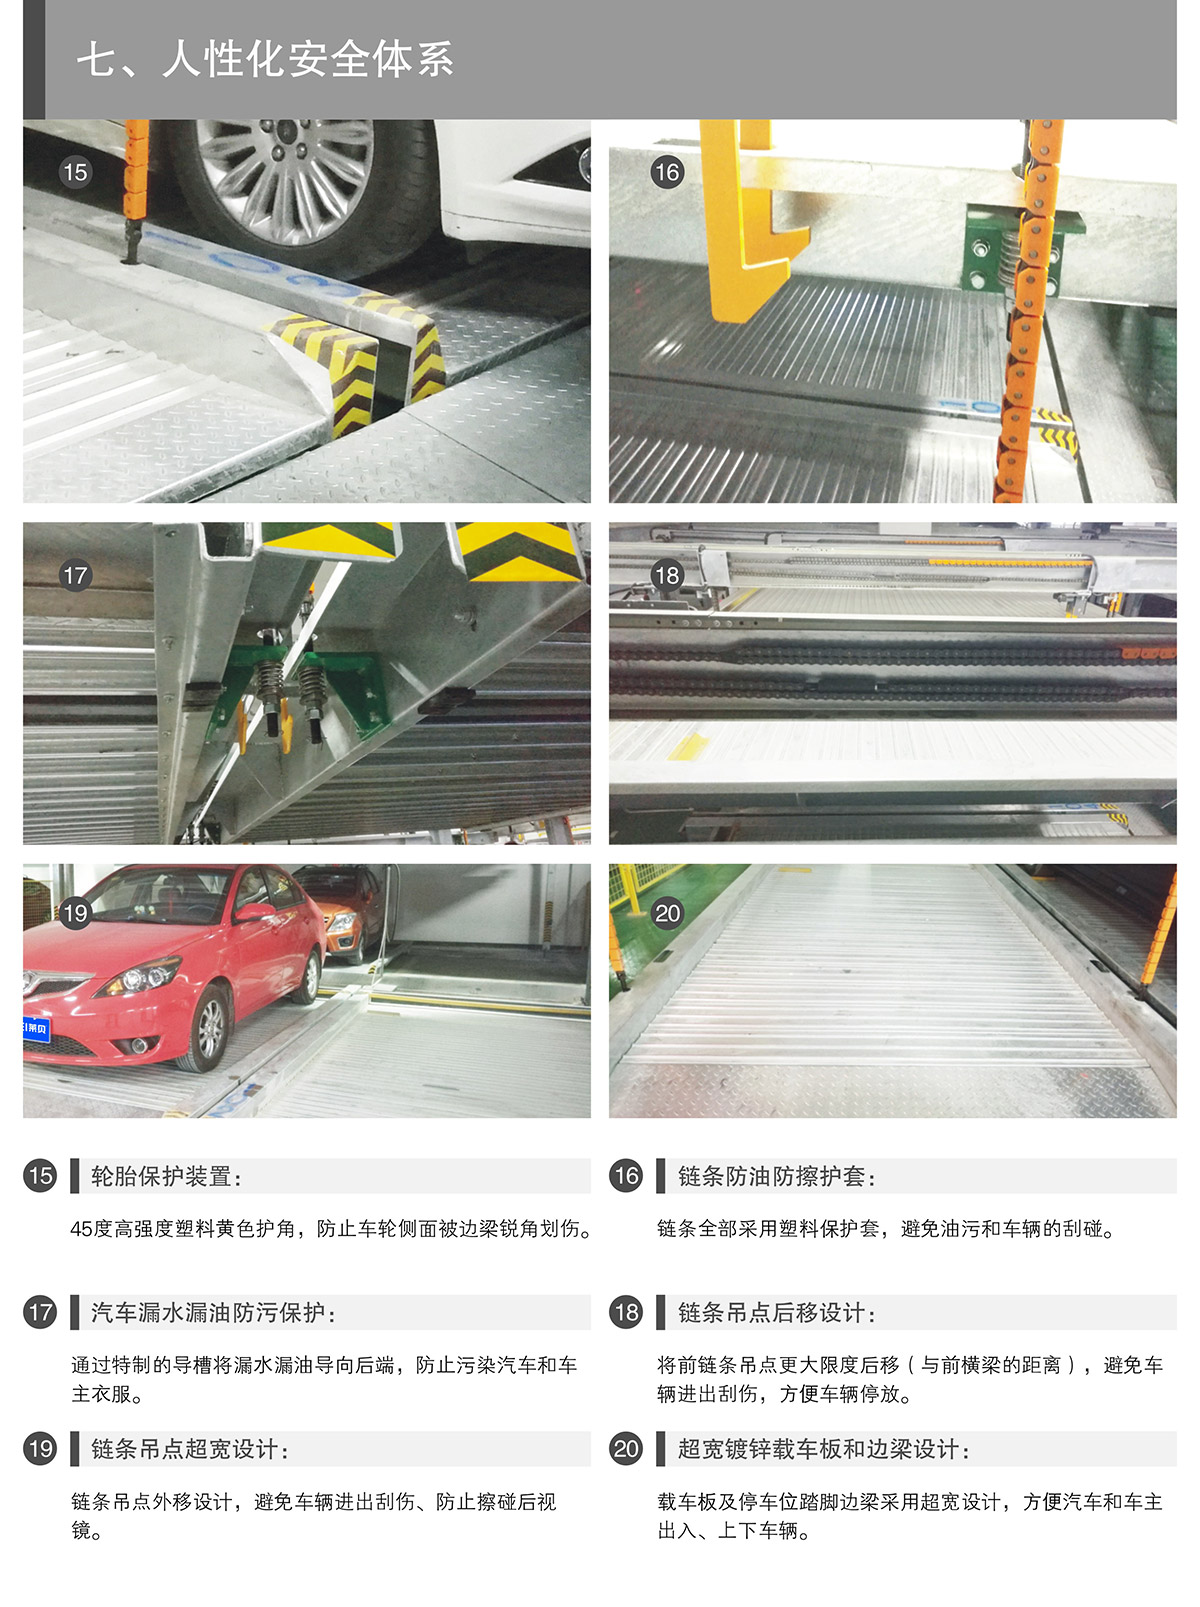 重庆PSH2-D1负一正一地坑二层升降横移立体停车设备人性化安全体系.jpg